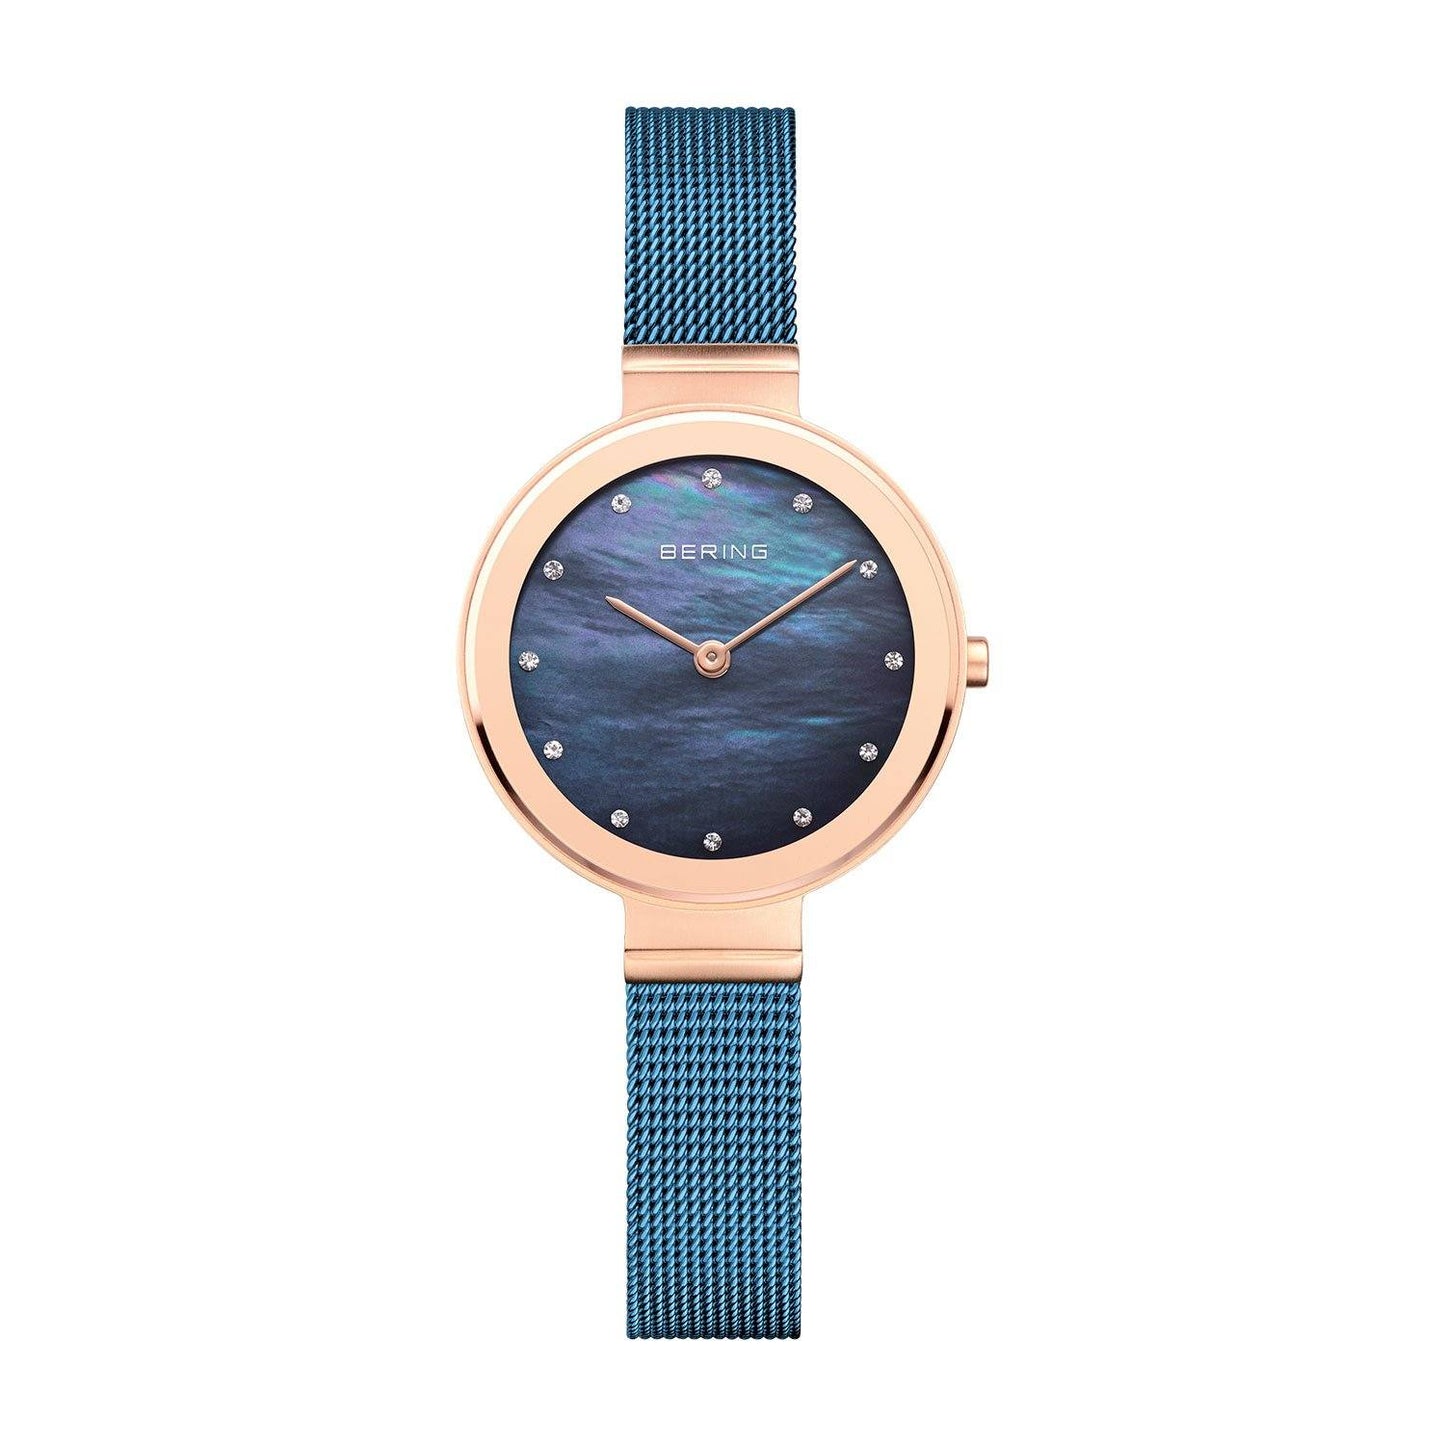 Reloj Bering malla clÃ¡sico de mujer azul madreperla y caja rosada